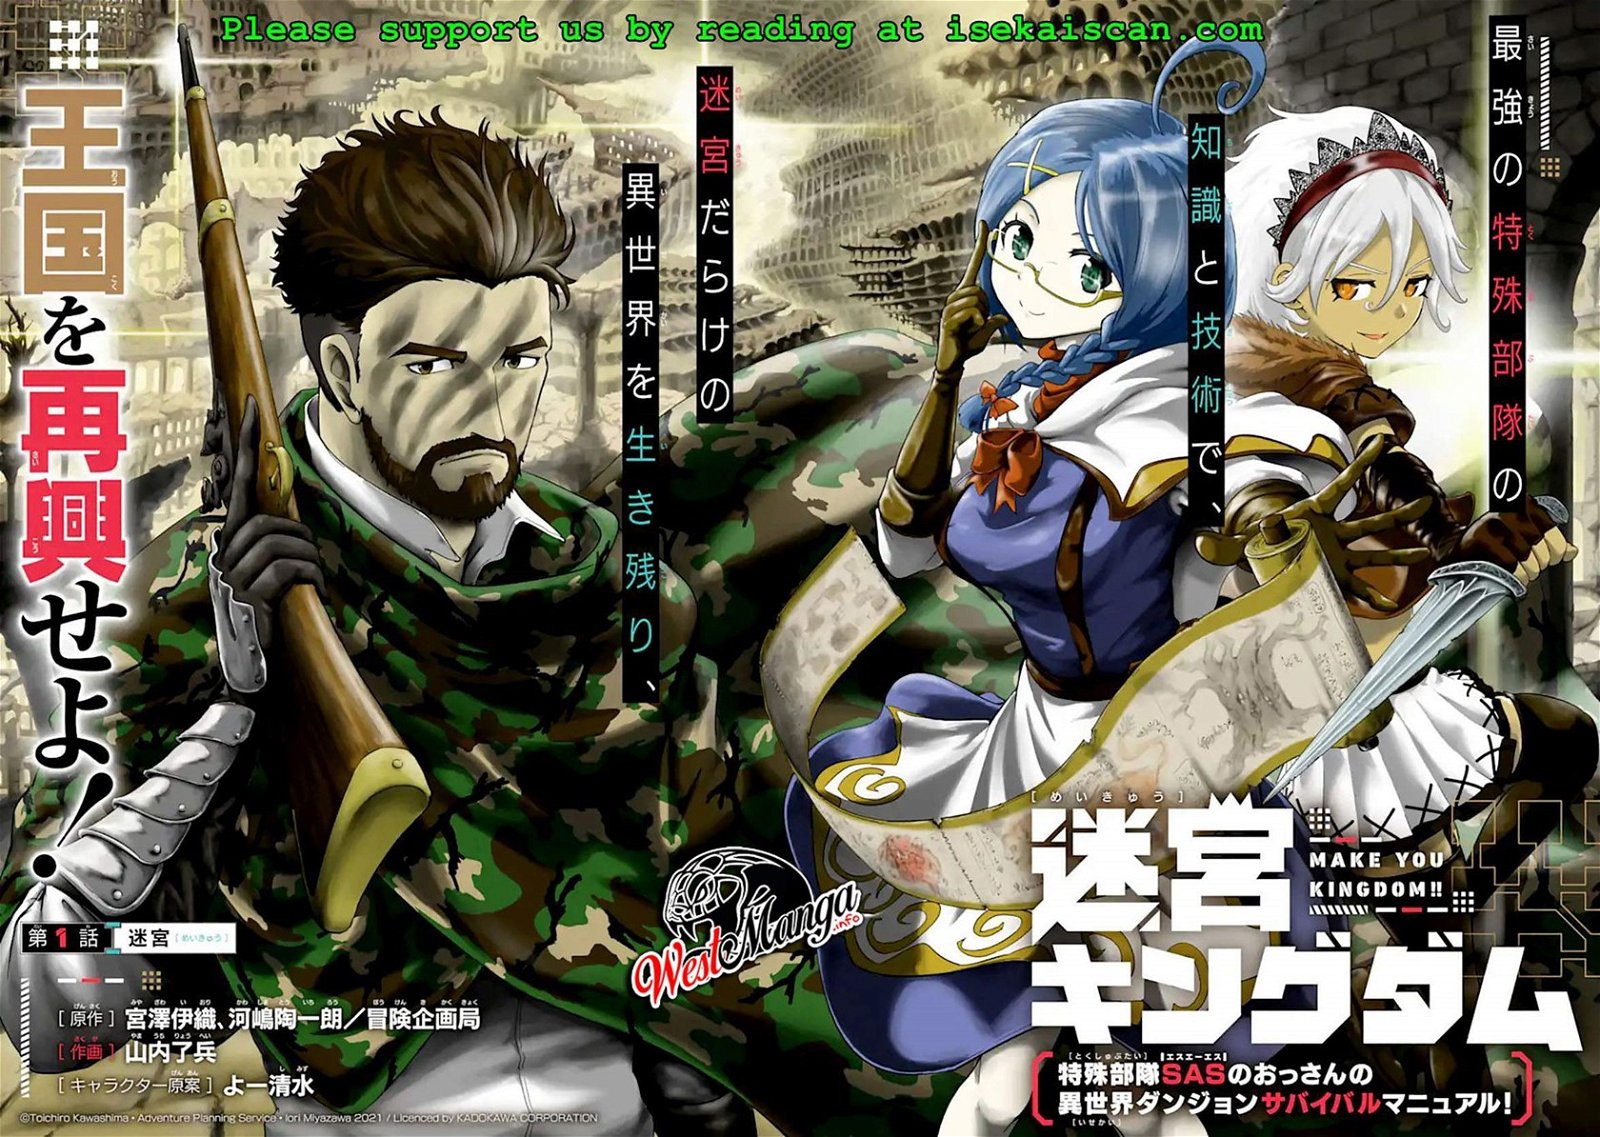 Baca Meikyuu Kingdom: Damu Tokushu Butai SAS no Ossan no Isekai Dungeon Survival Manual! Chapter 1.1  - GudangKomik